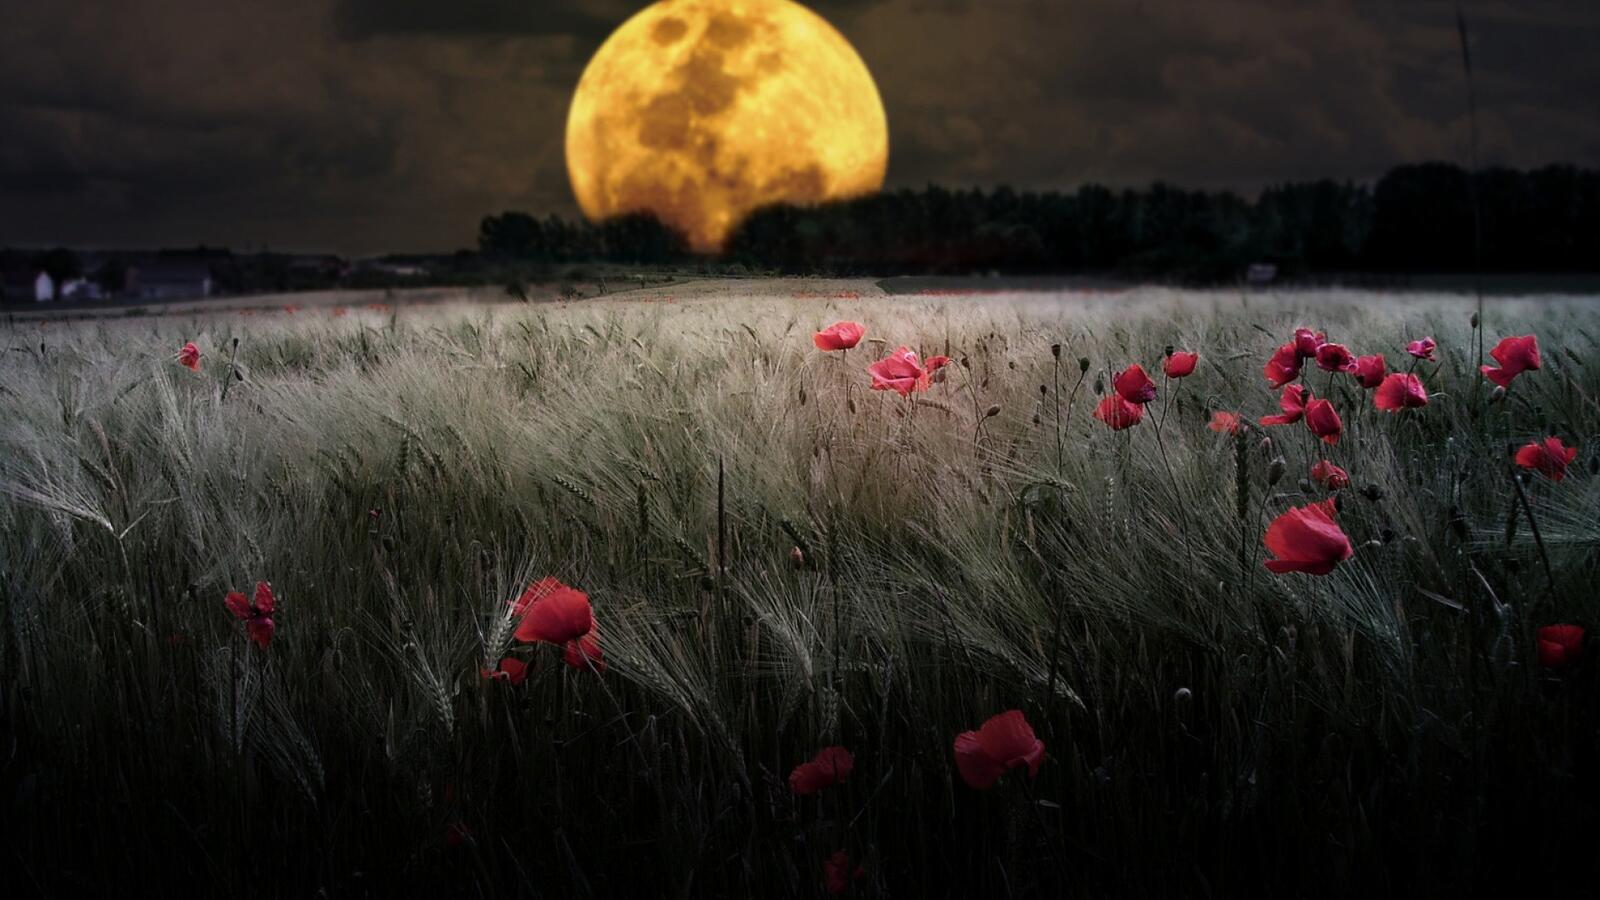 Бесплатное фото Обои с большой желтой луной на большом поле с цветами